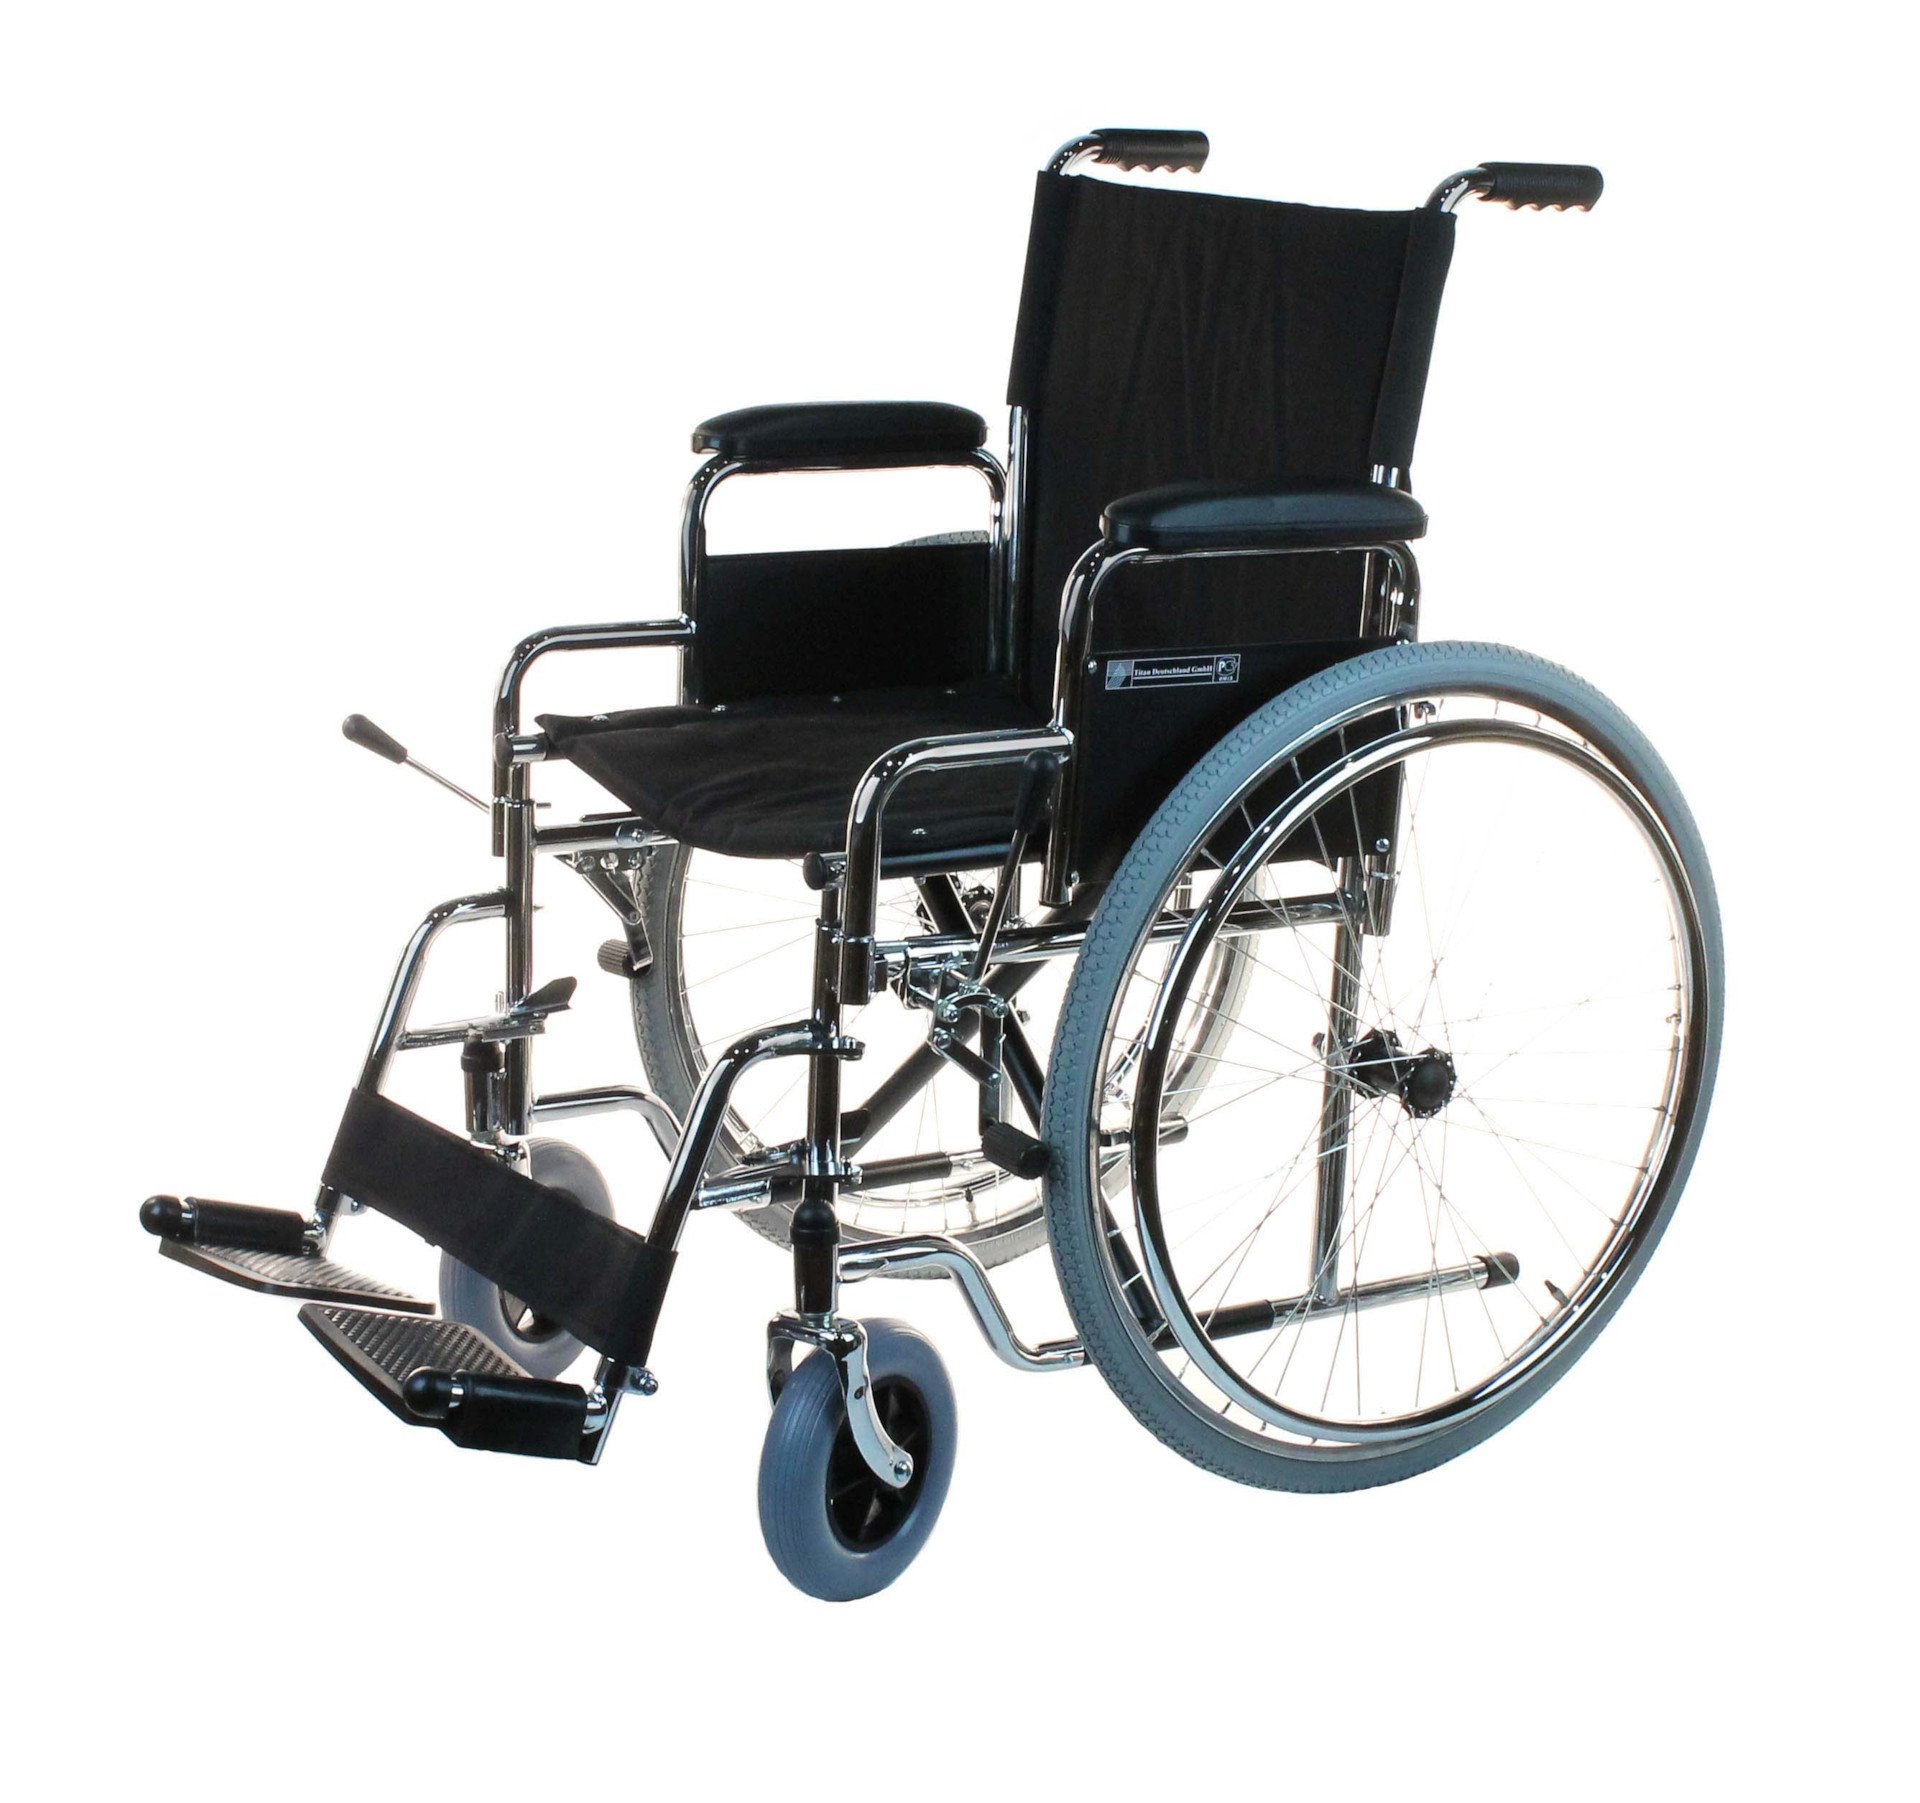 Описание: Картинки по запросу "инвалидная коляска взрослая"